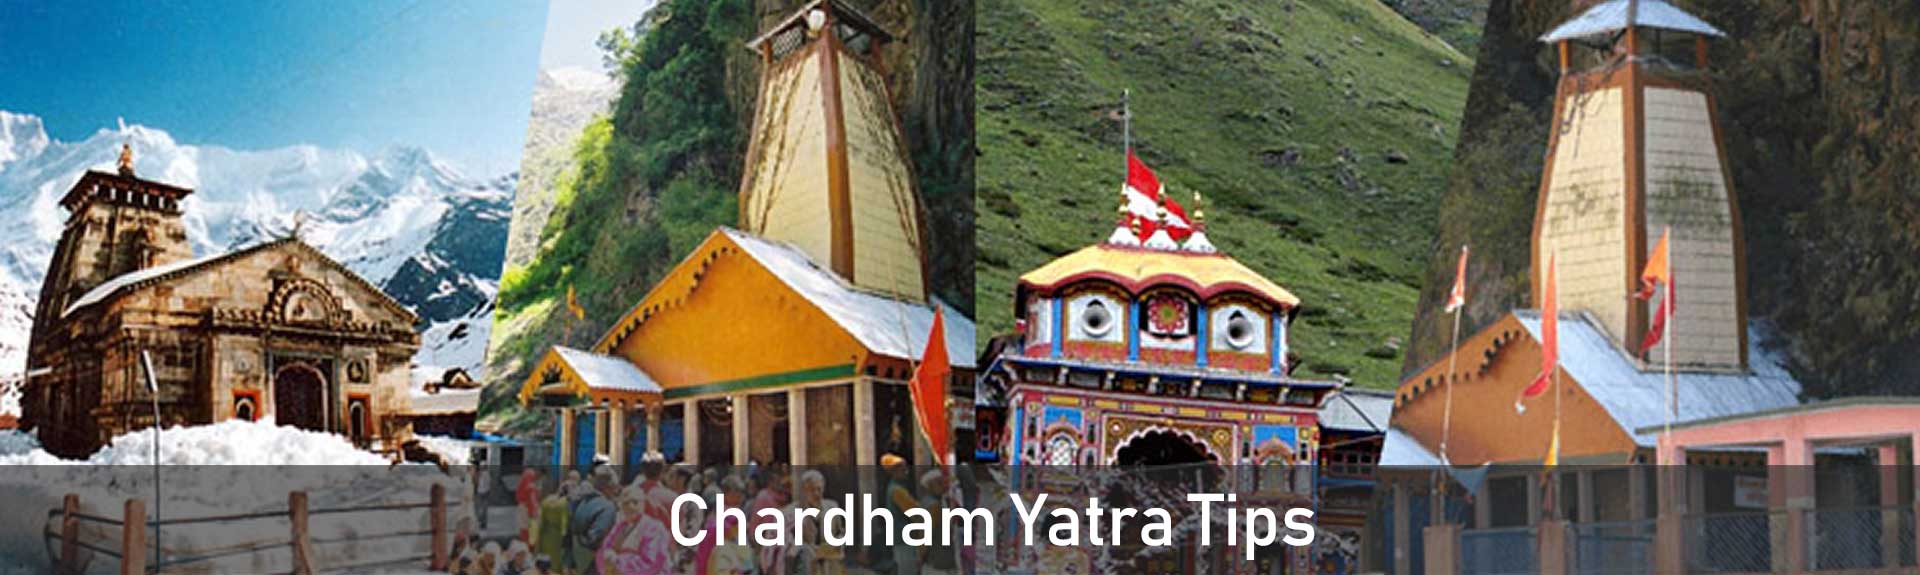 Chardham Yatra Tips